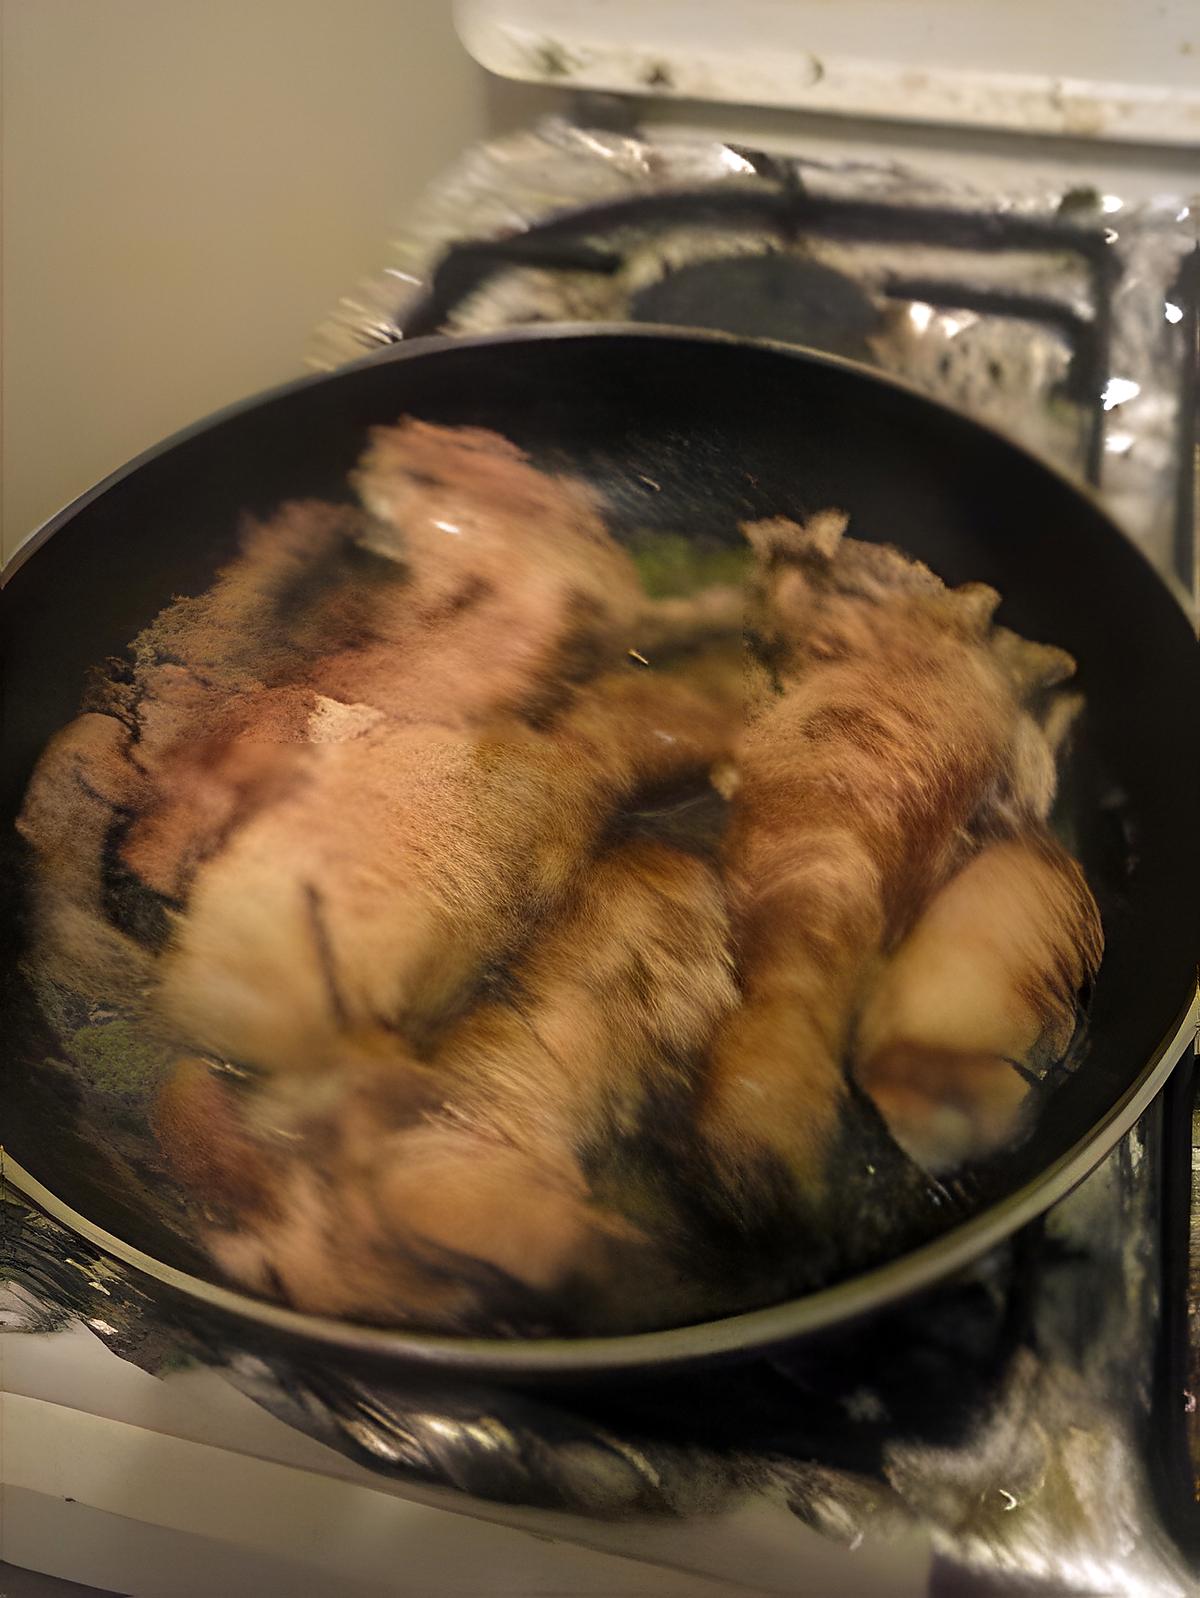 recette poulet fumee frit.